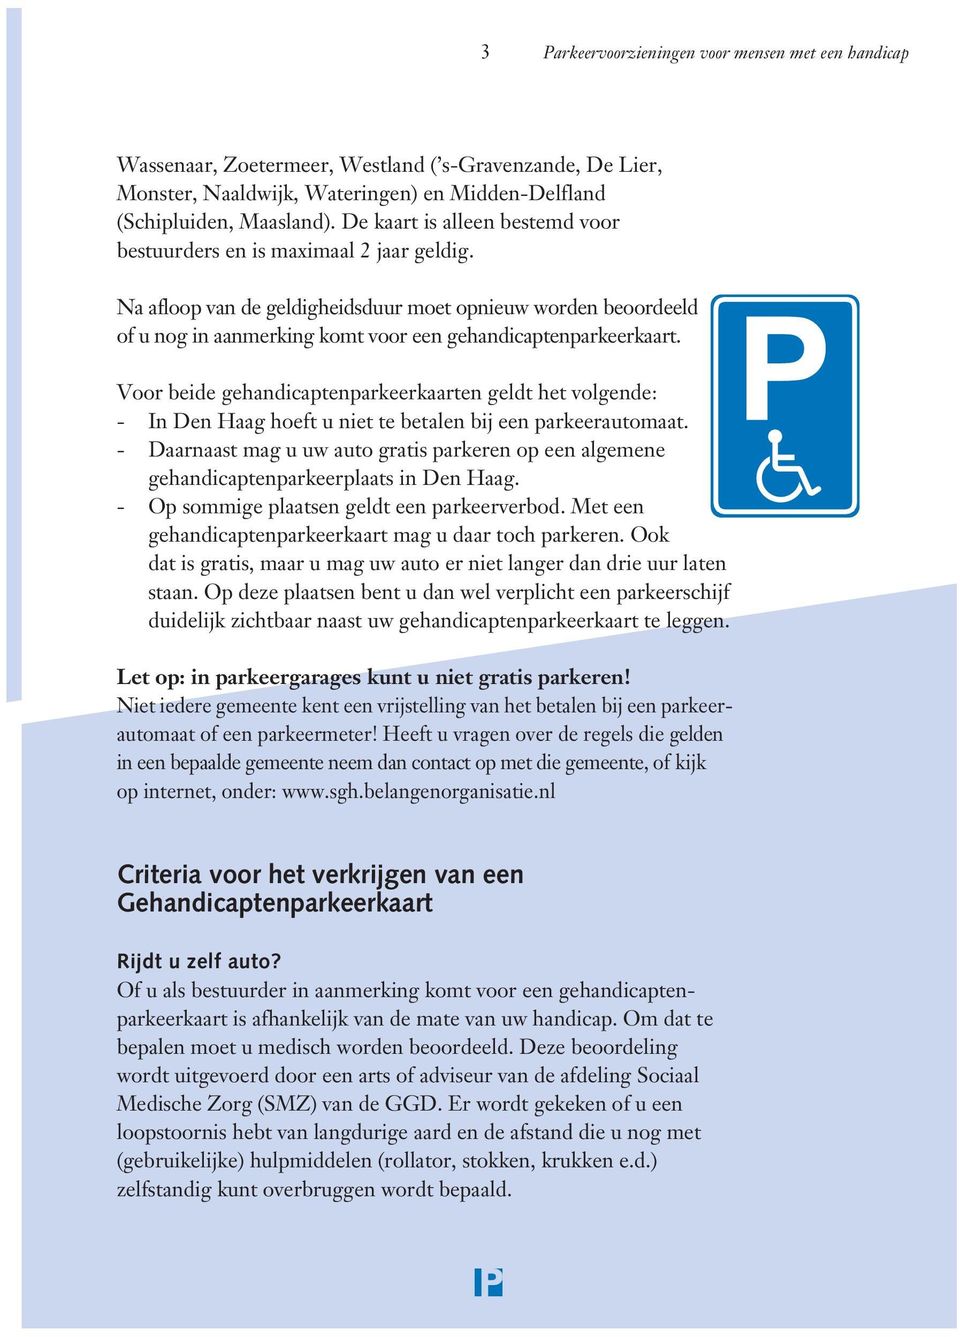 Na afloop van de geldigheidsduur moet opnieuw worden beoordeeld of u nog in aanmerking komt voor een gehandicaptenparkeerkaart.